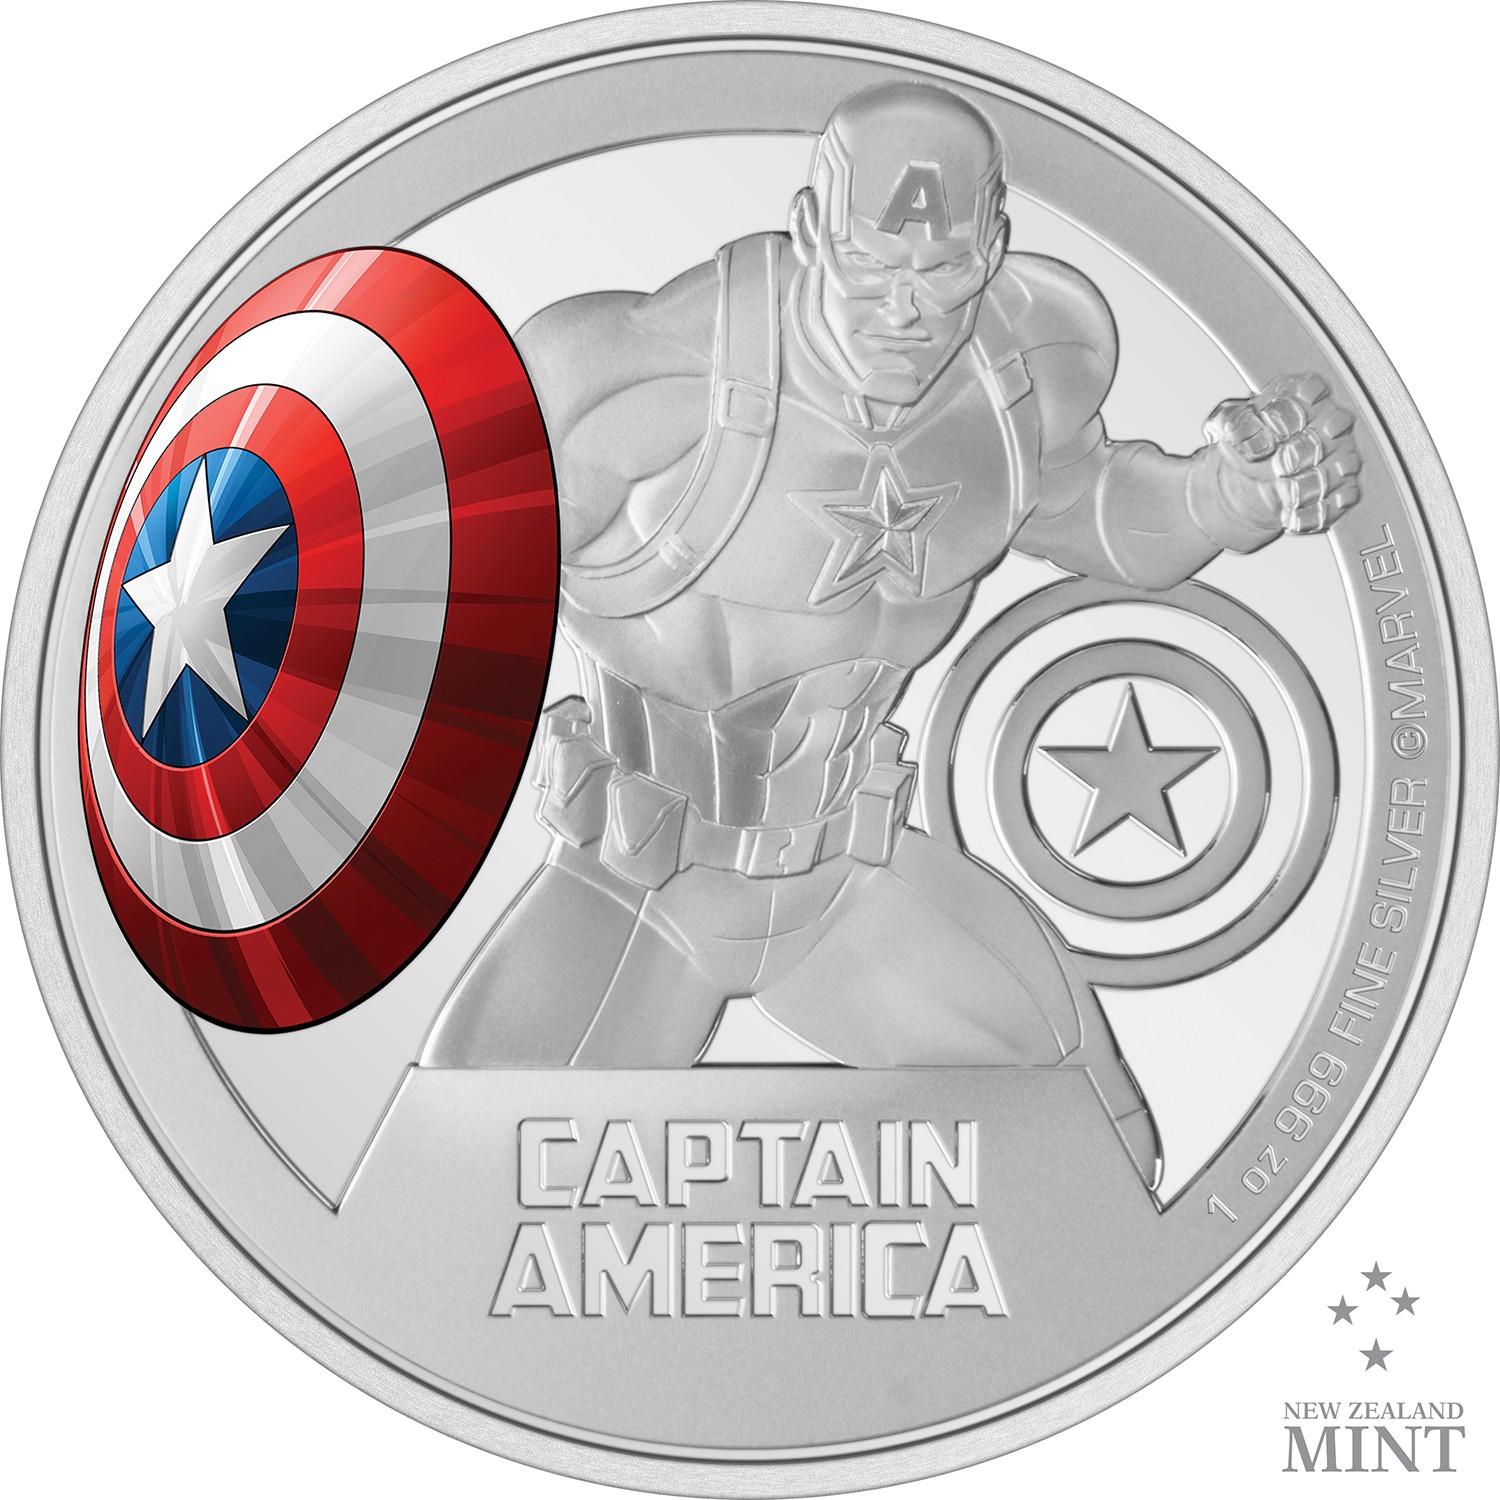 Captain America 1oz Silver Coin- Prototype Shown